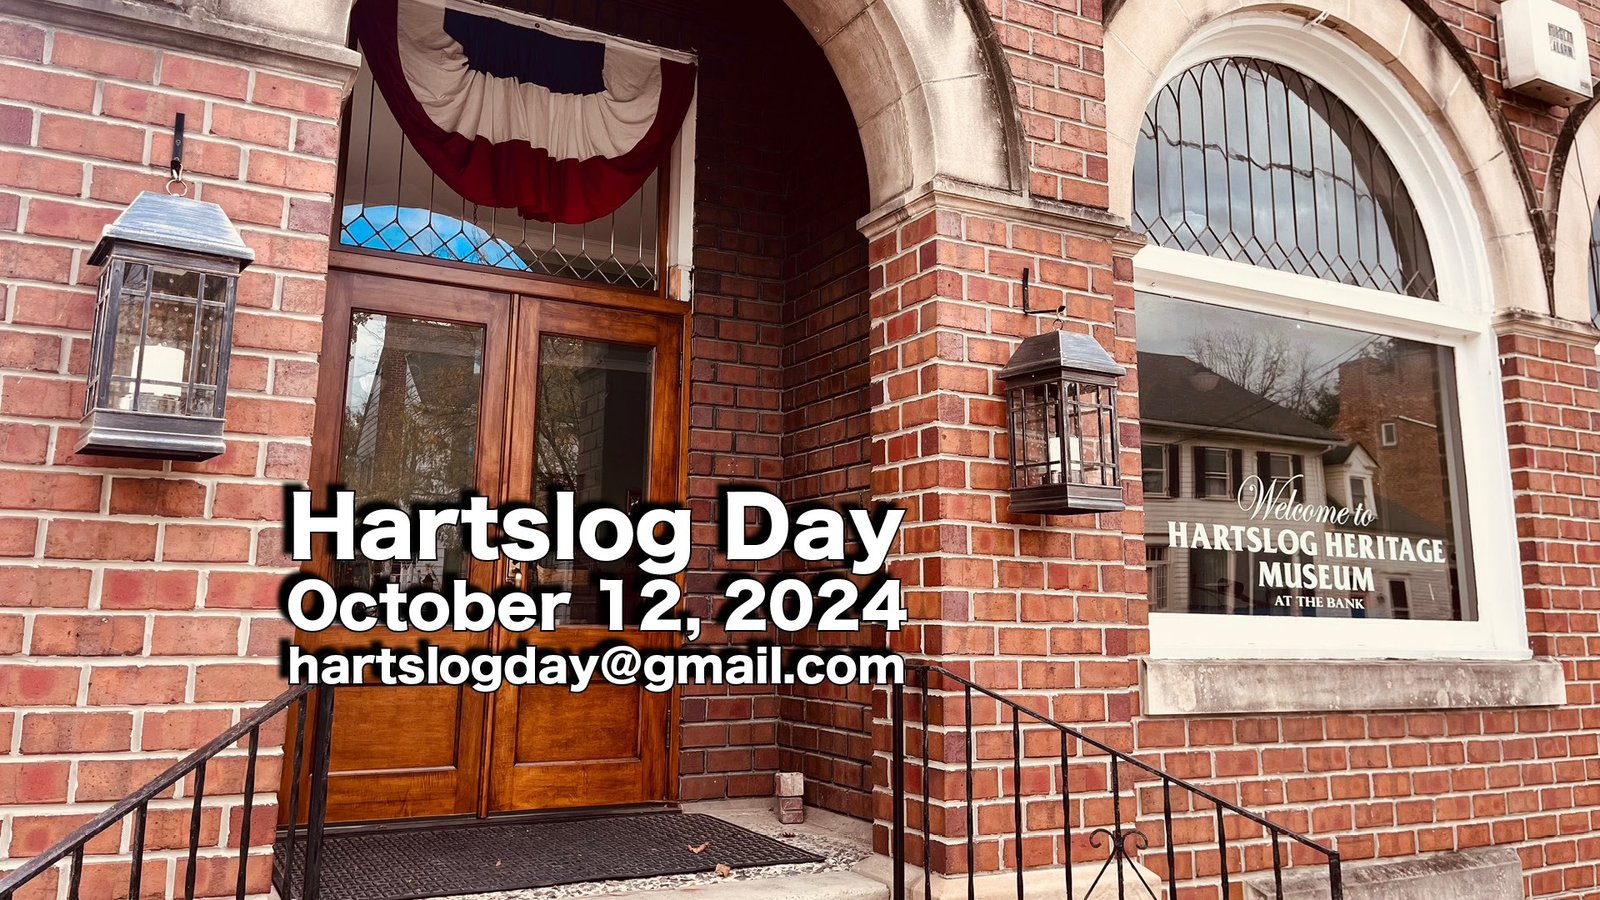 Hartslog Day Heritage Festival